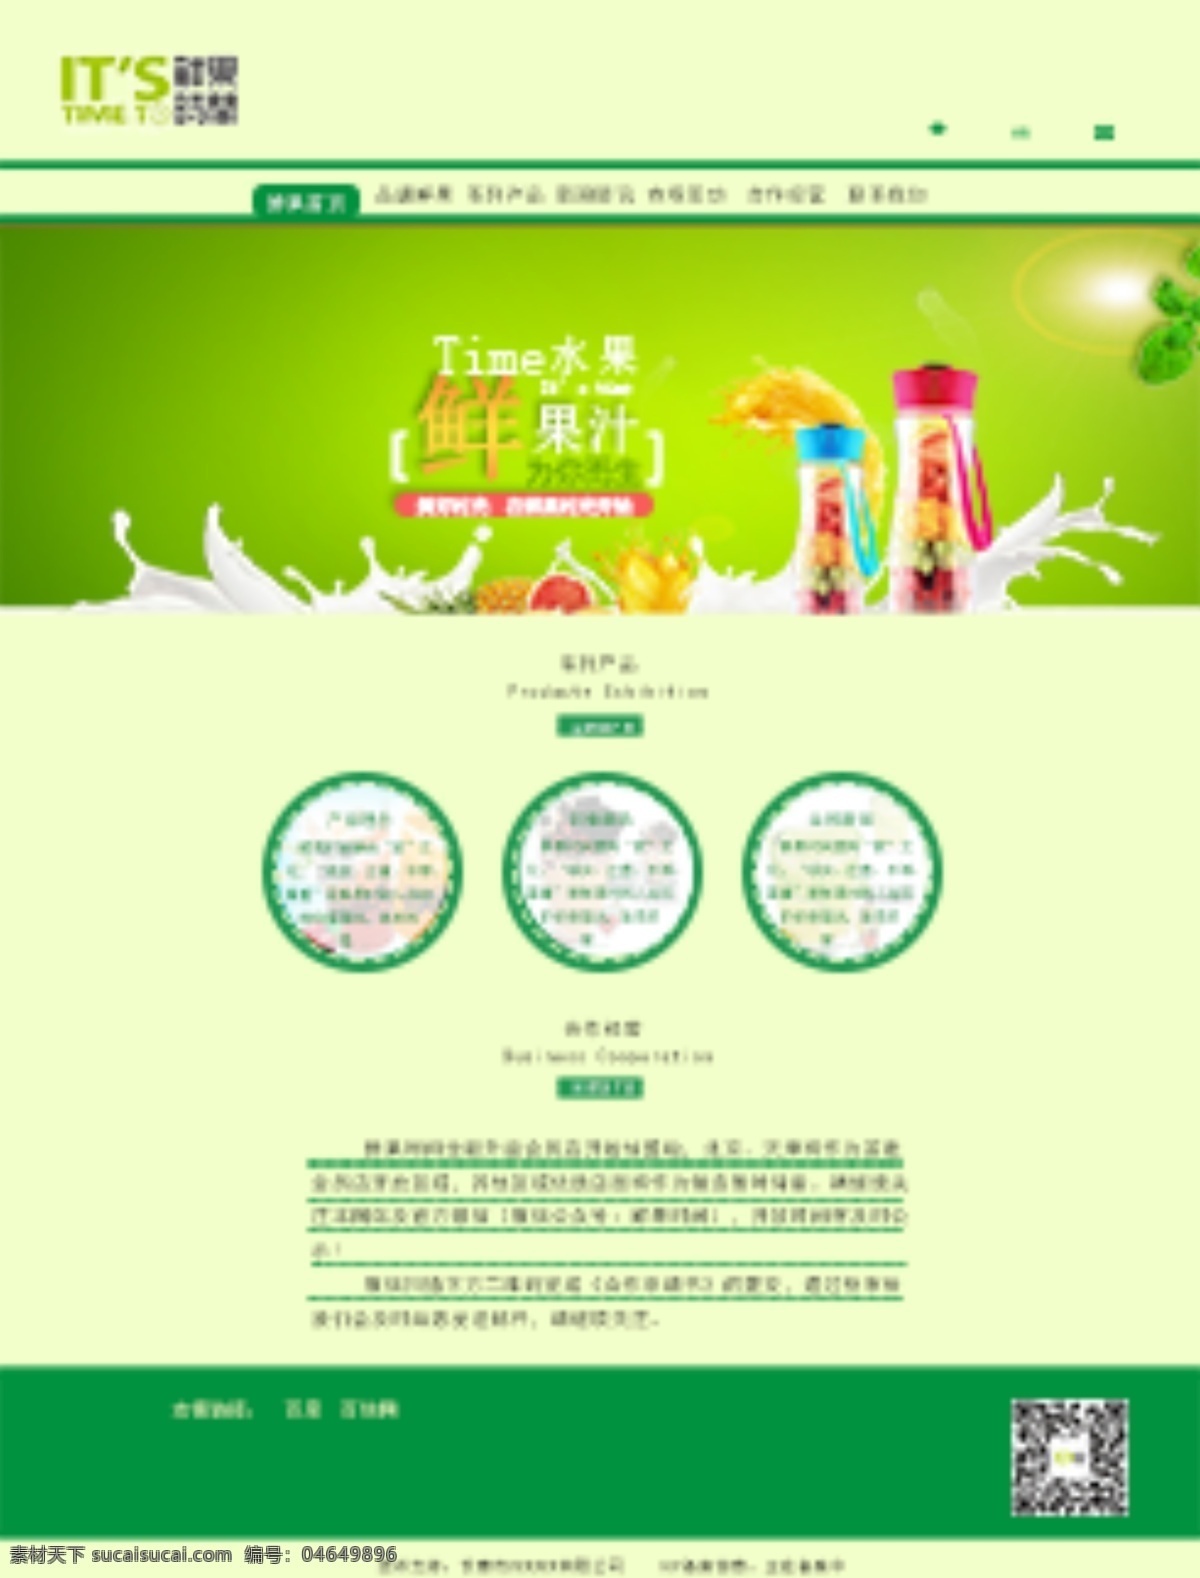 鲜果时光 饮品网站 果汁网站 饮料网站 绿色网站 网站设计 banner 白色